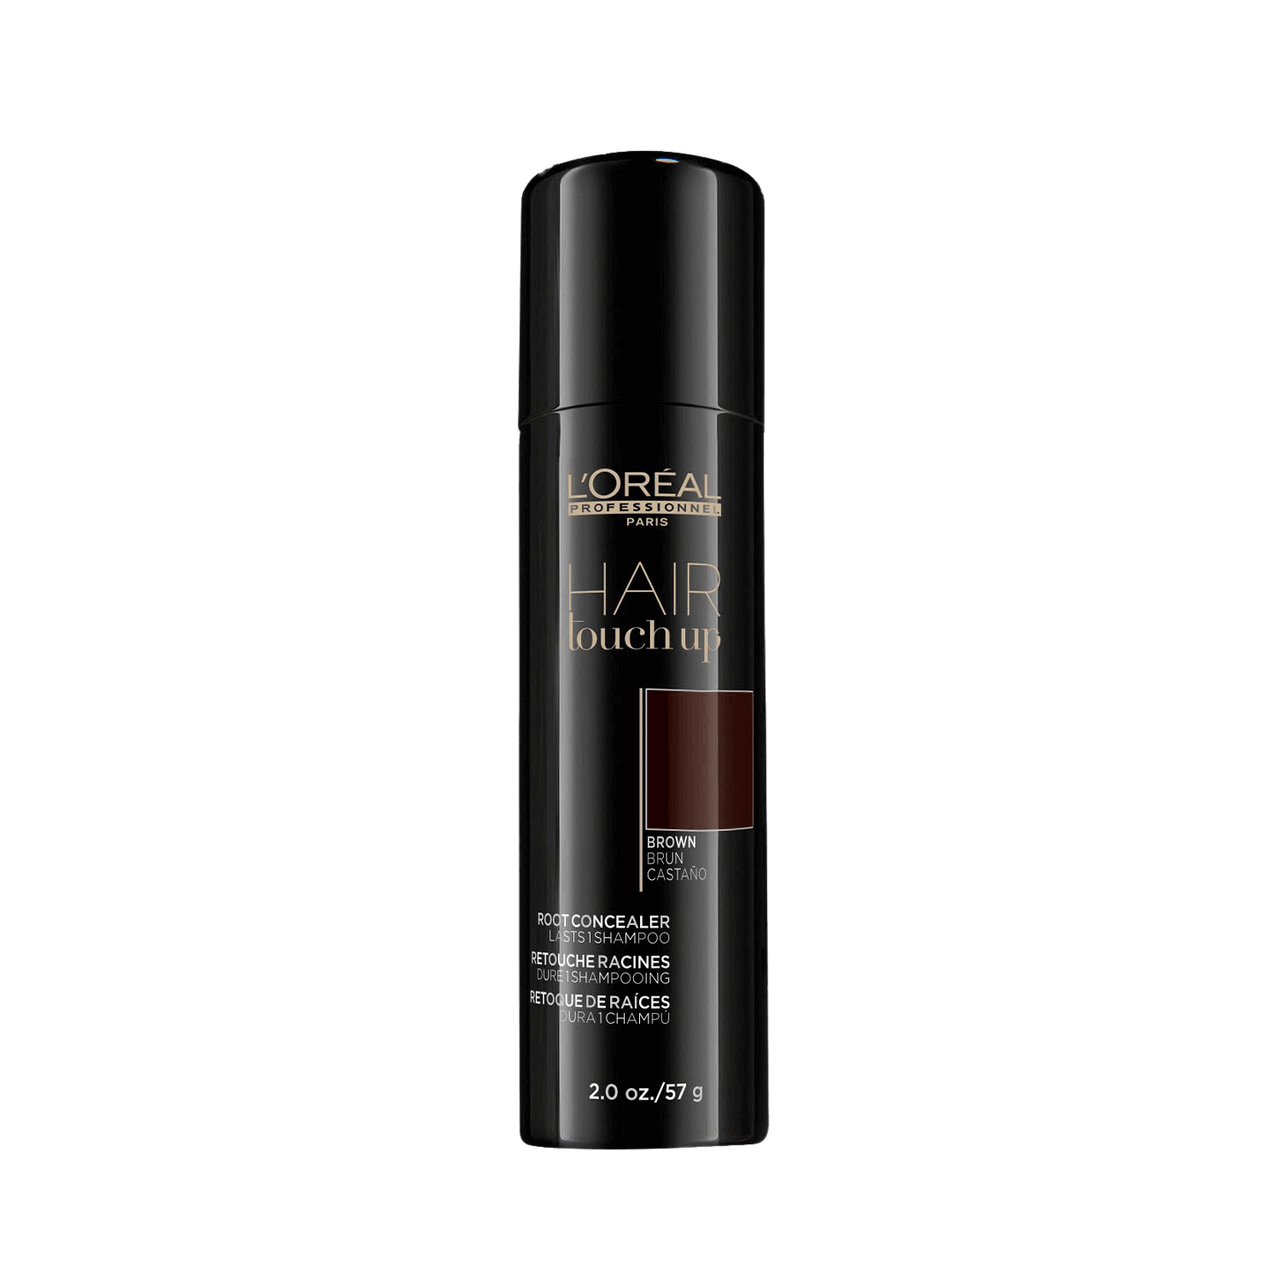 L'Oréal Professionnel Hair Touchup Brown 57g Spray